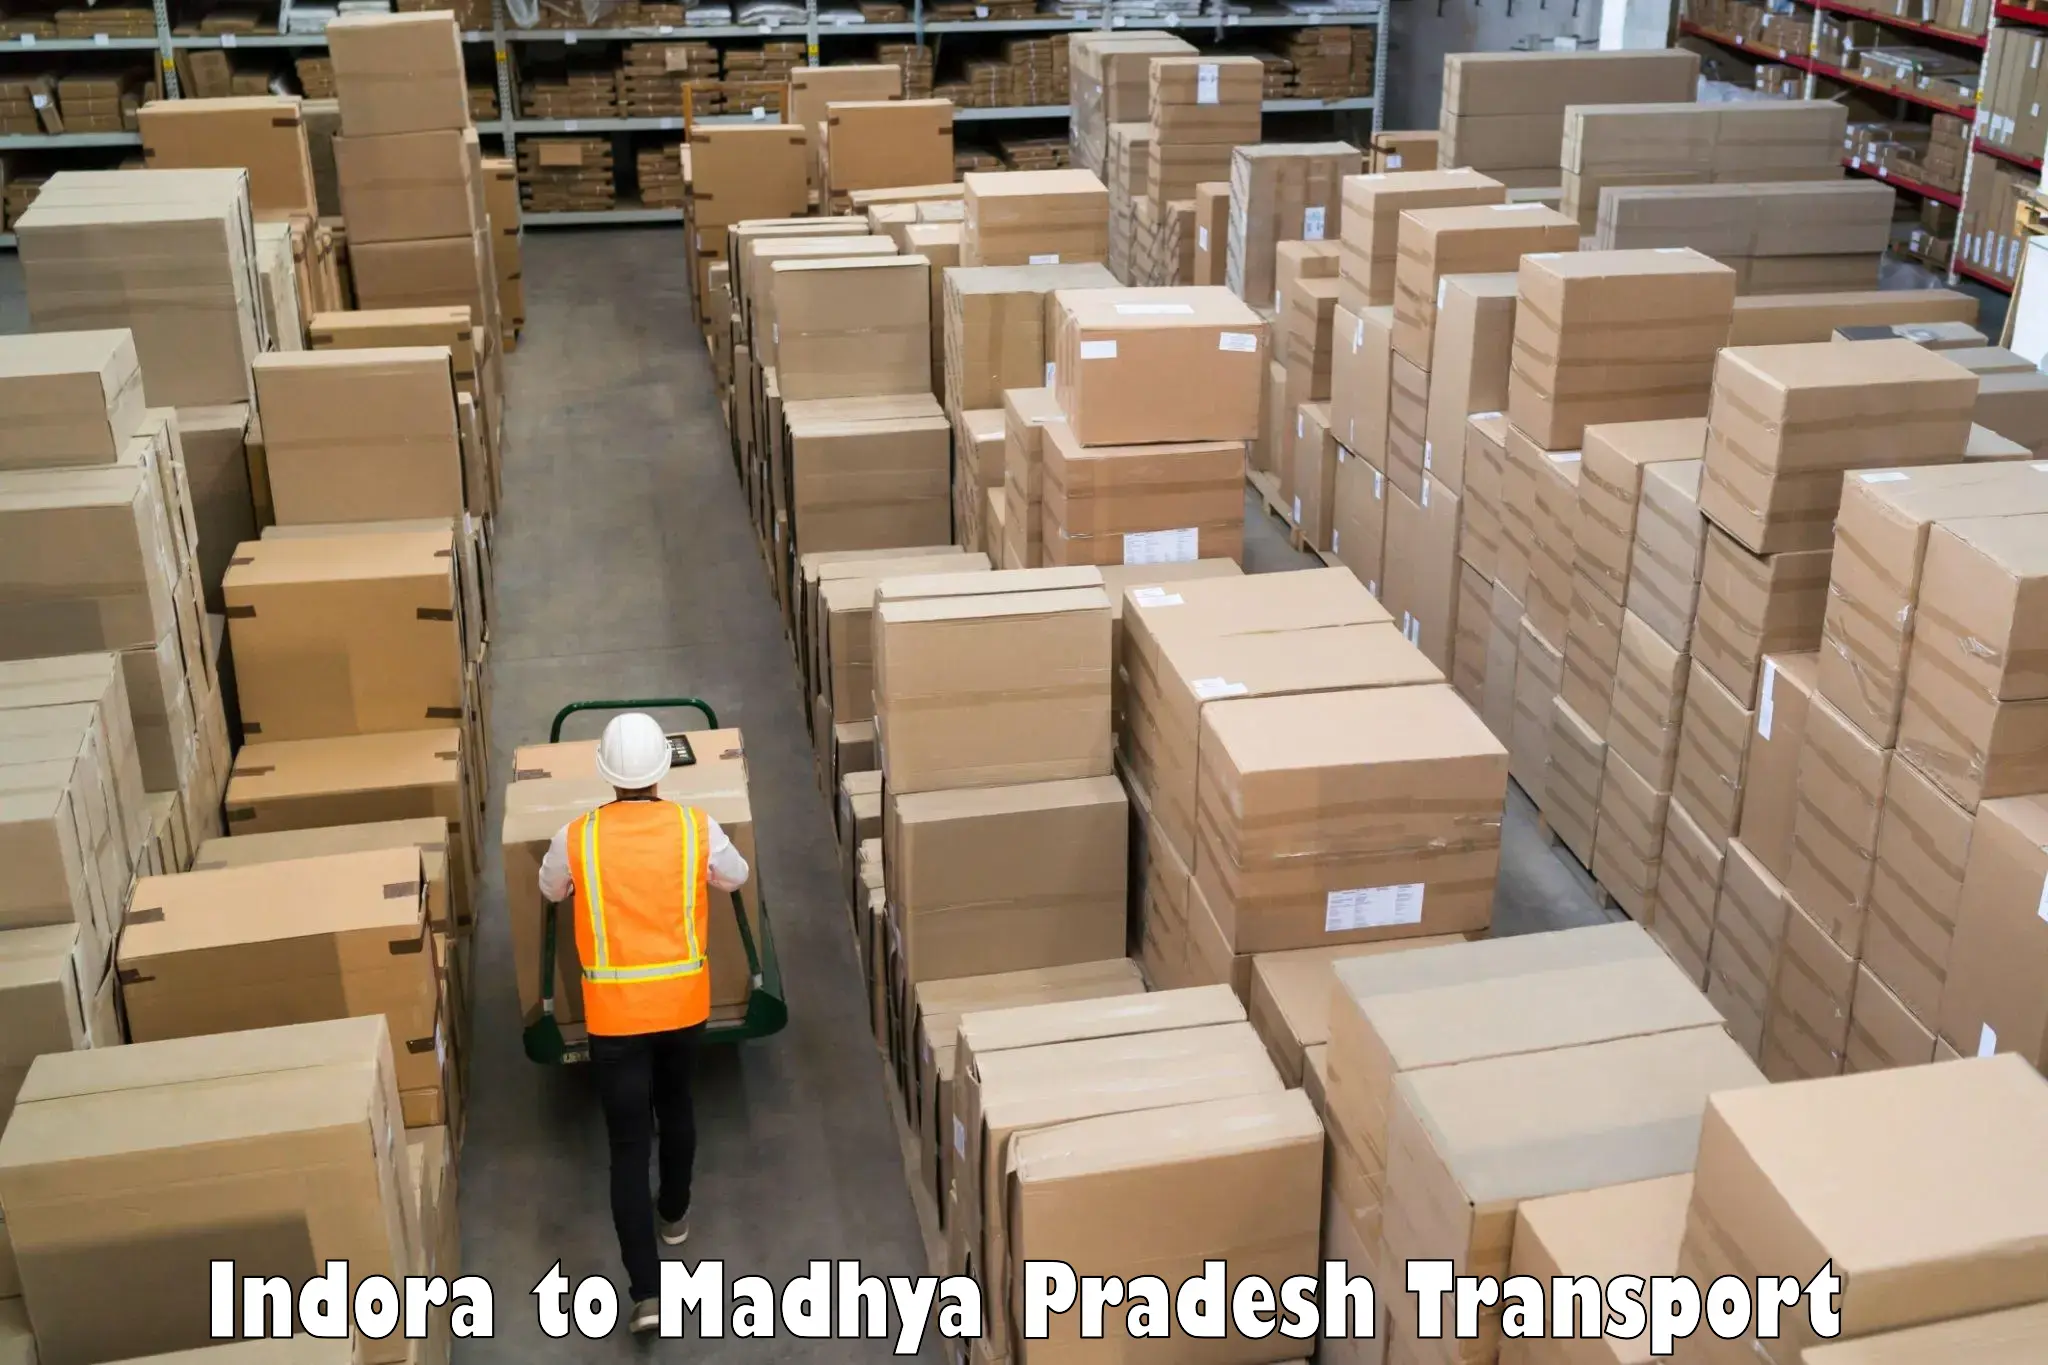 Pick up transport service Indora to Dewas